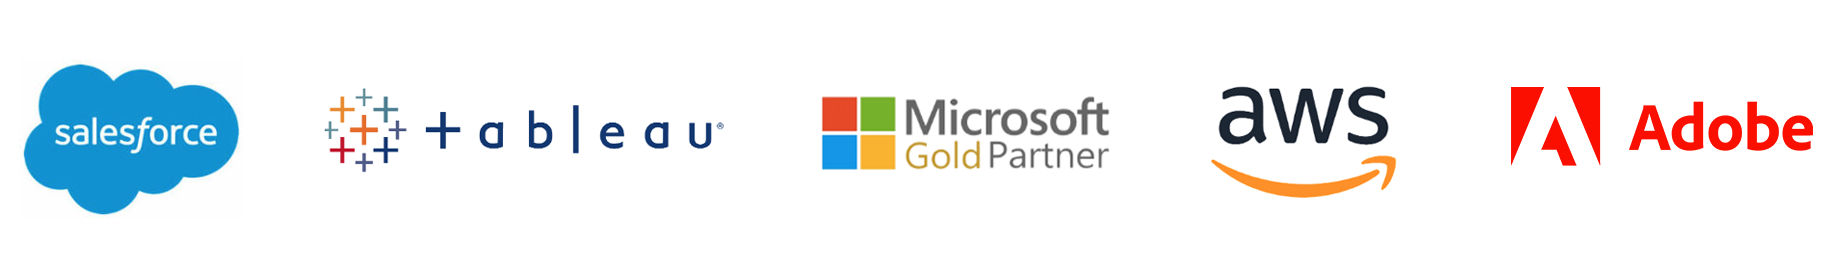 Logotipos de nuestros partners Salesforce, Tableau, Microsoft, AWS y Adobe